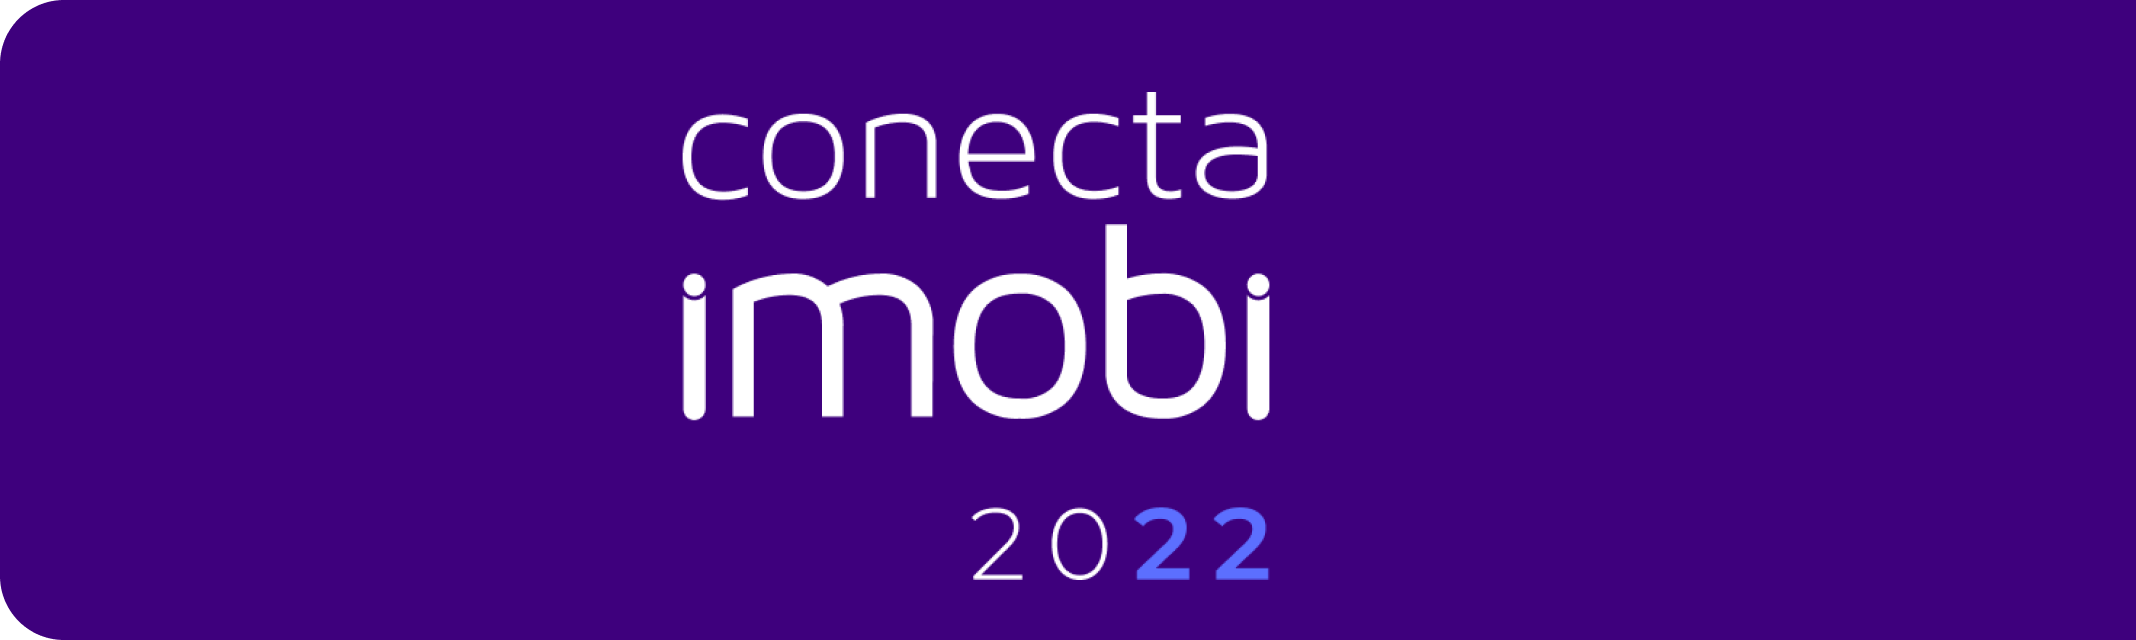 Banner roxo escrito: conecta imobi 2022